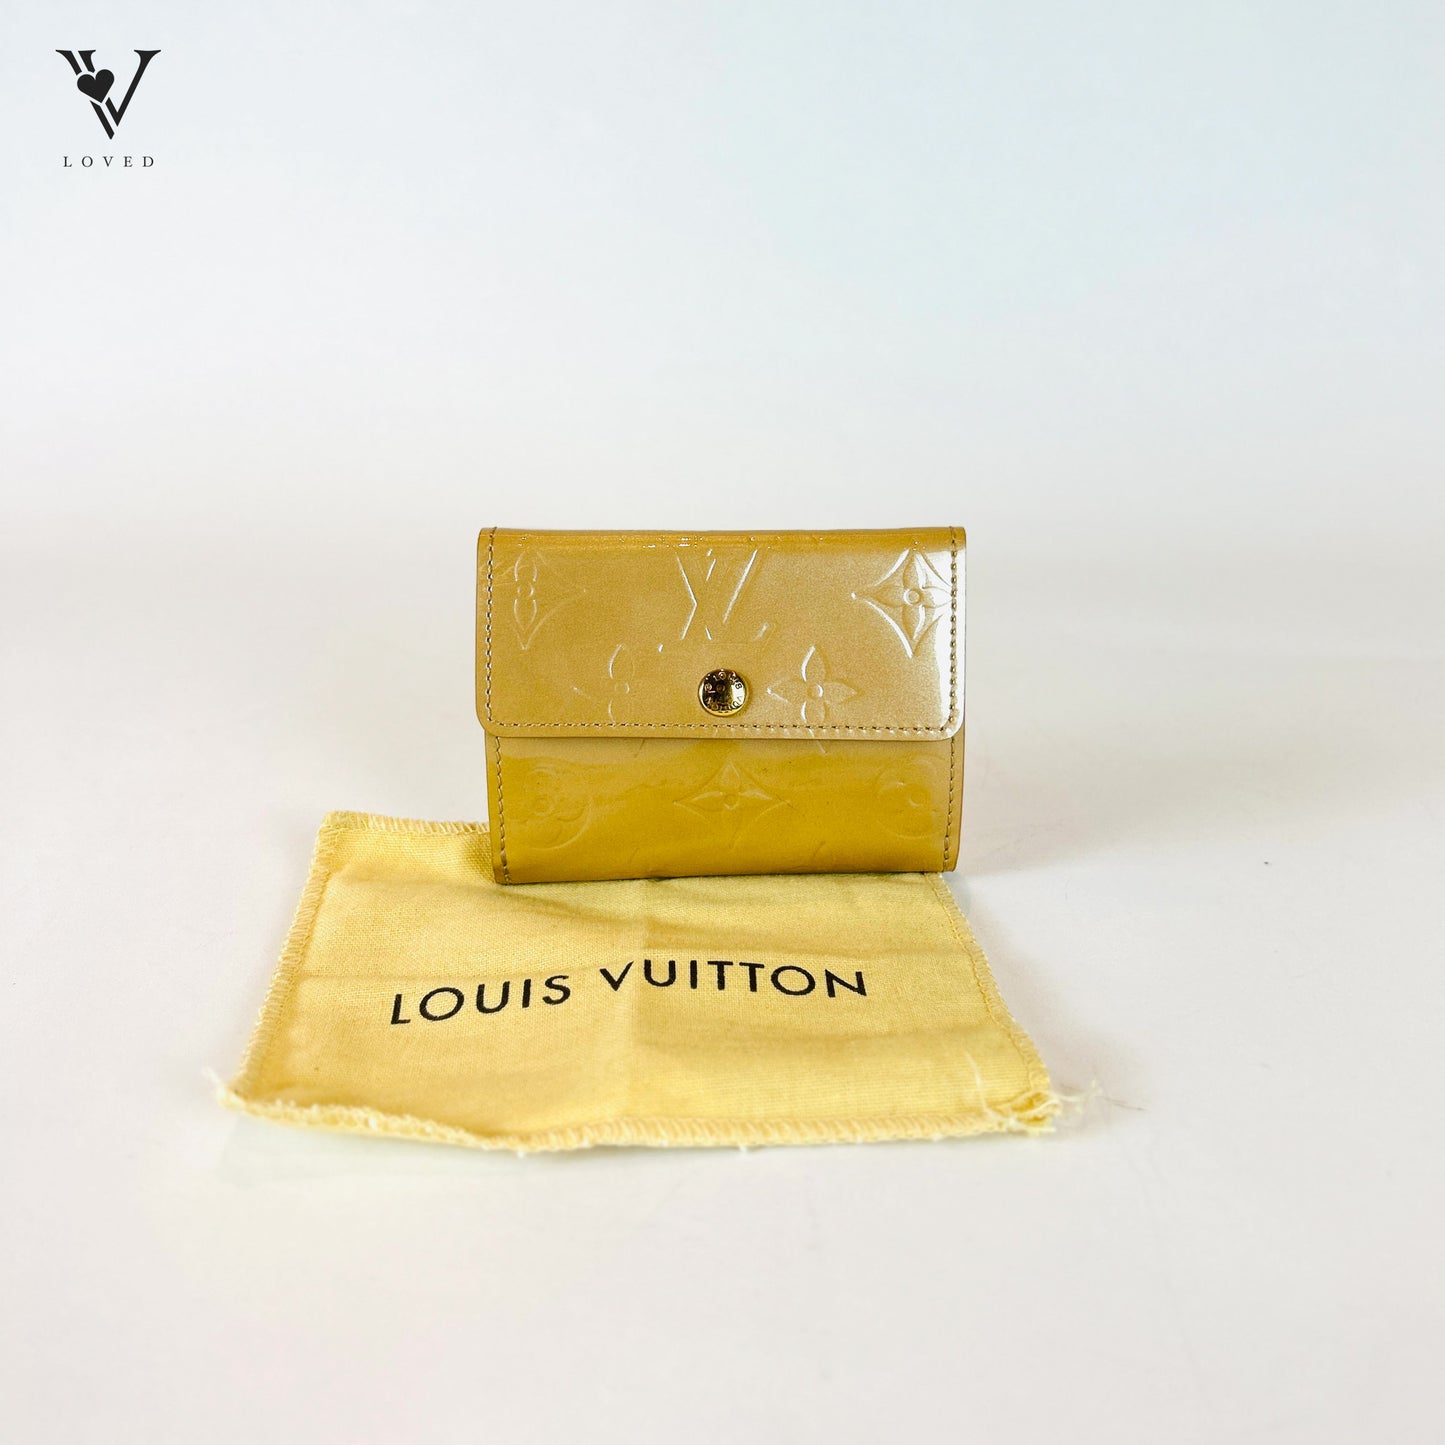 Louis Vuitton Vernis Elise Noisette